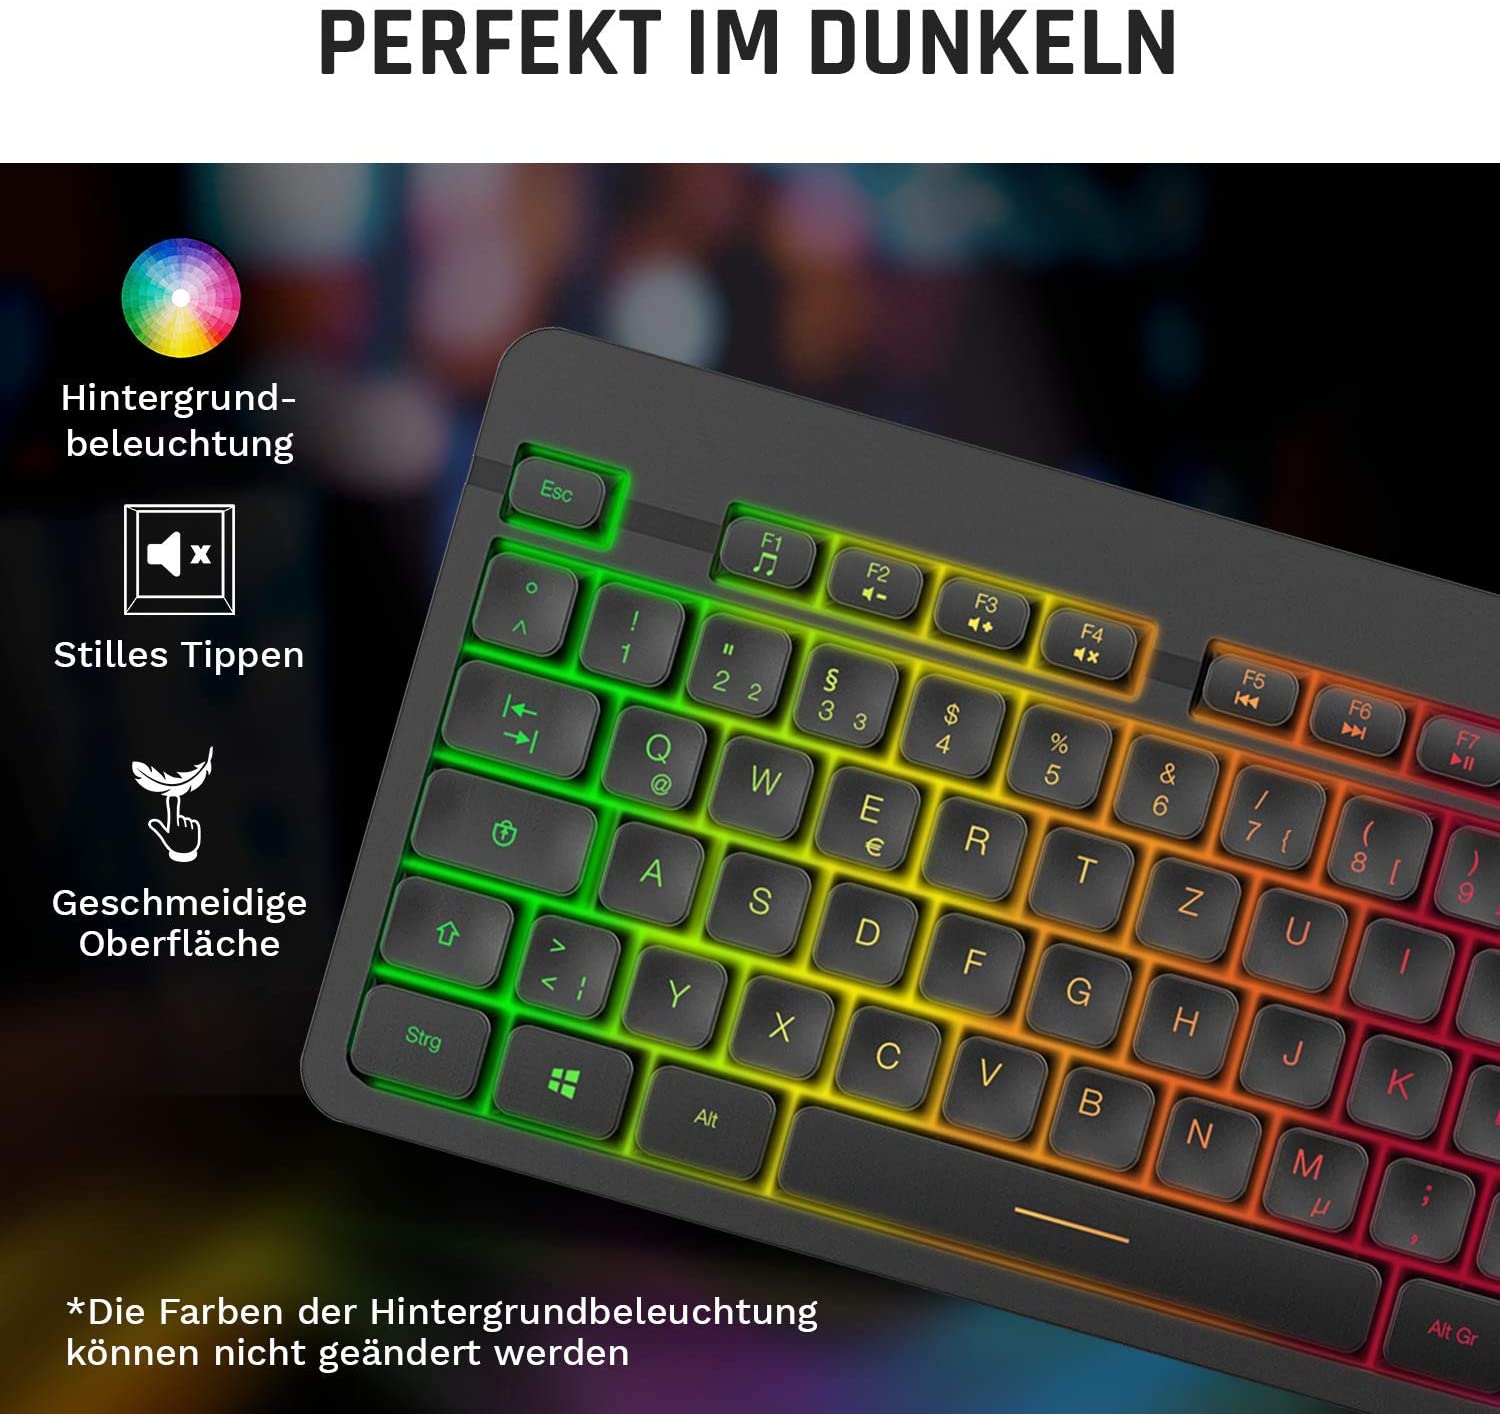 KLIM Light V2 Gaming Tastatur